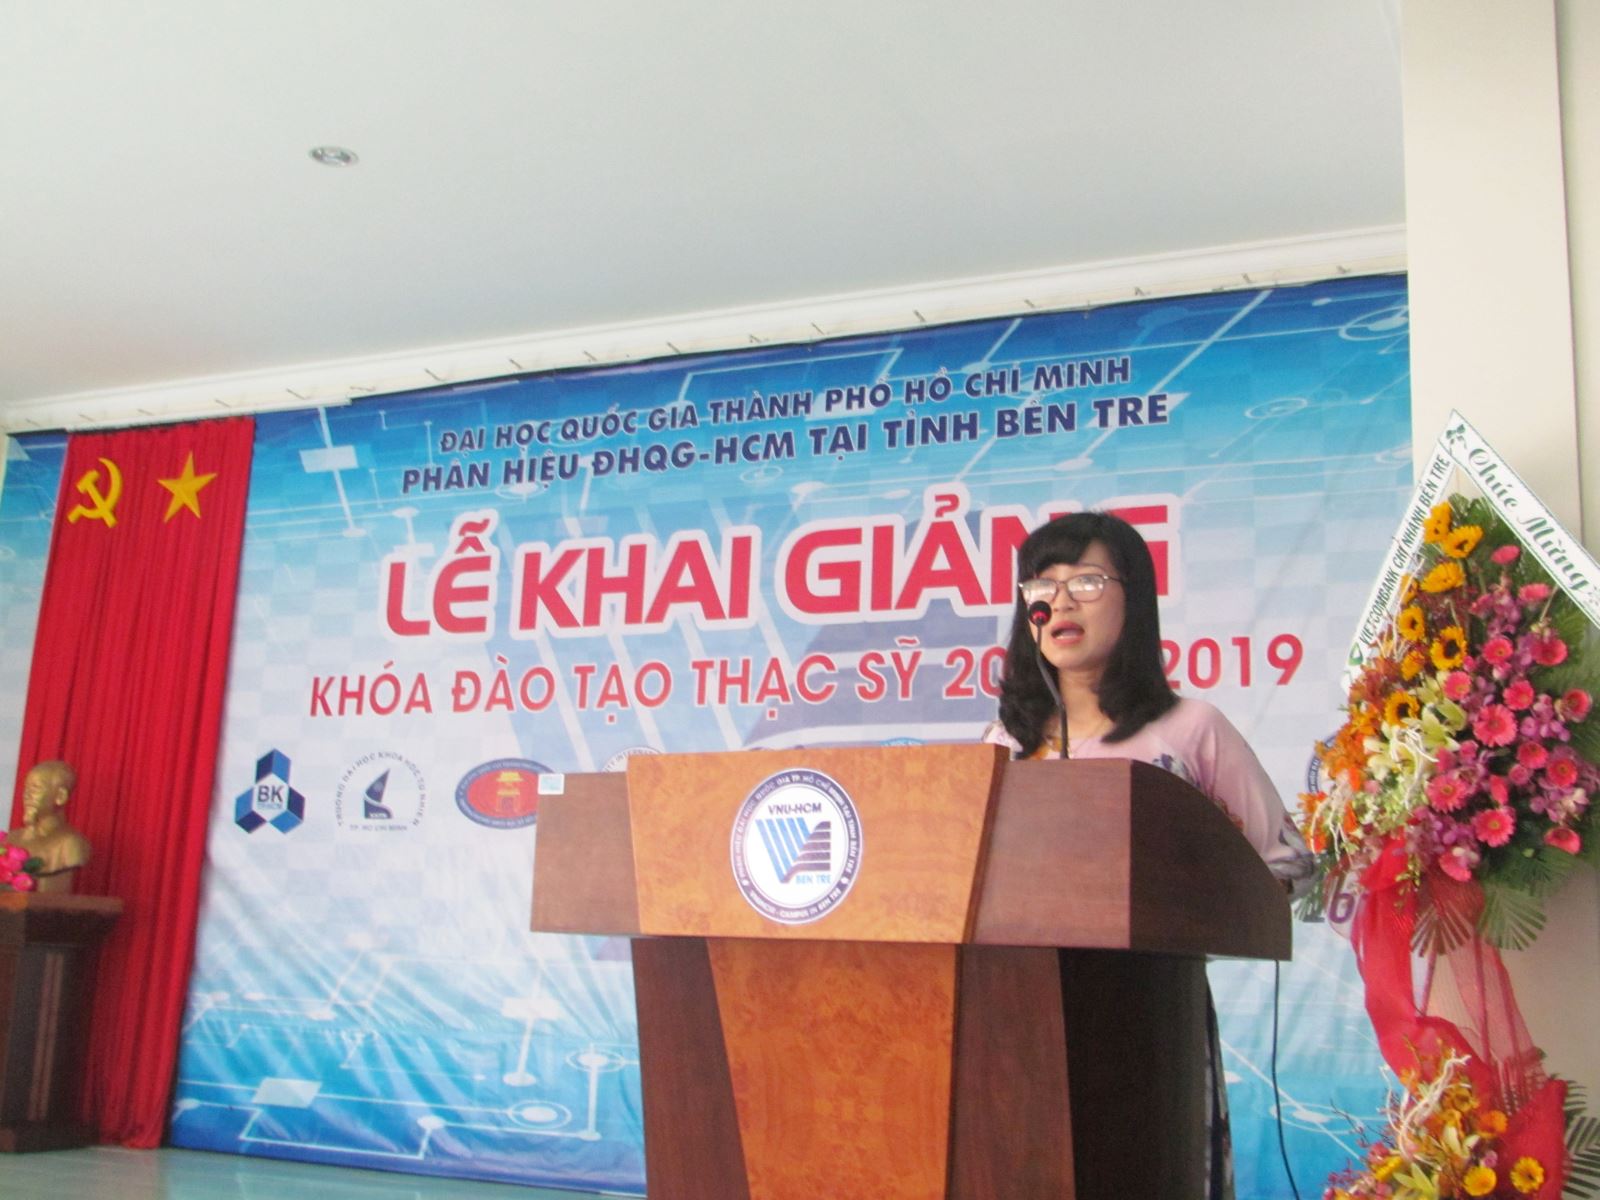 Tưng bừng Khai giảng Khóa đào tạo thạc sỹ 2017 - 2019 tại Phân hiệu ĐHQG-HCM tại tỉnh Bến Tre